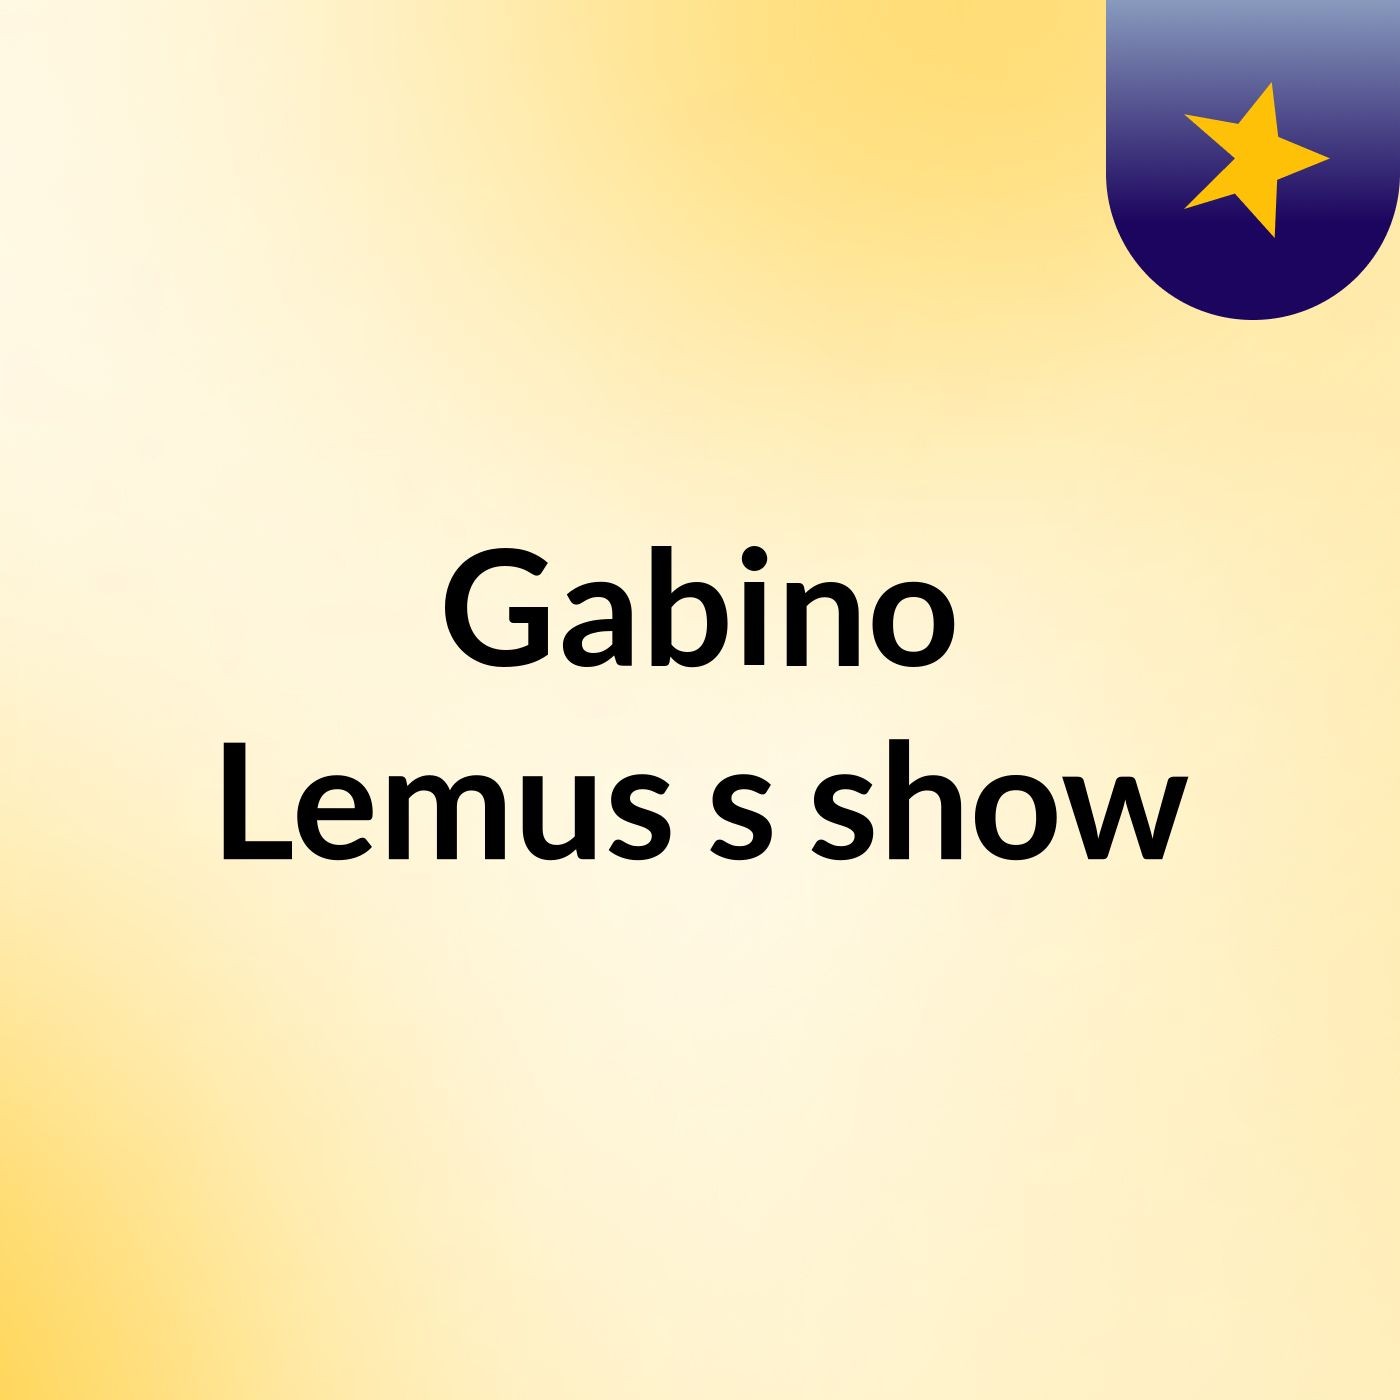 Gabino Lemus's show